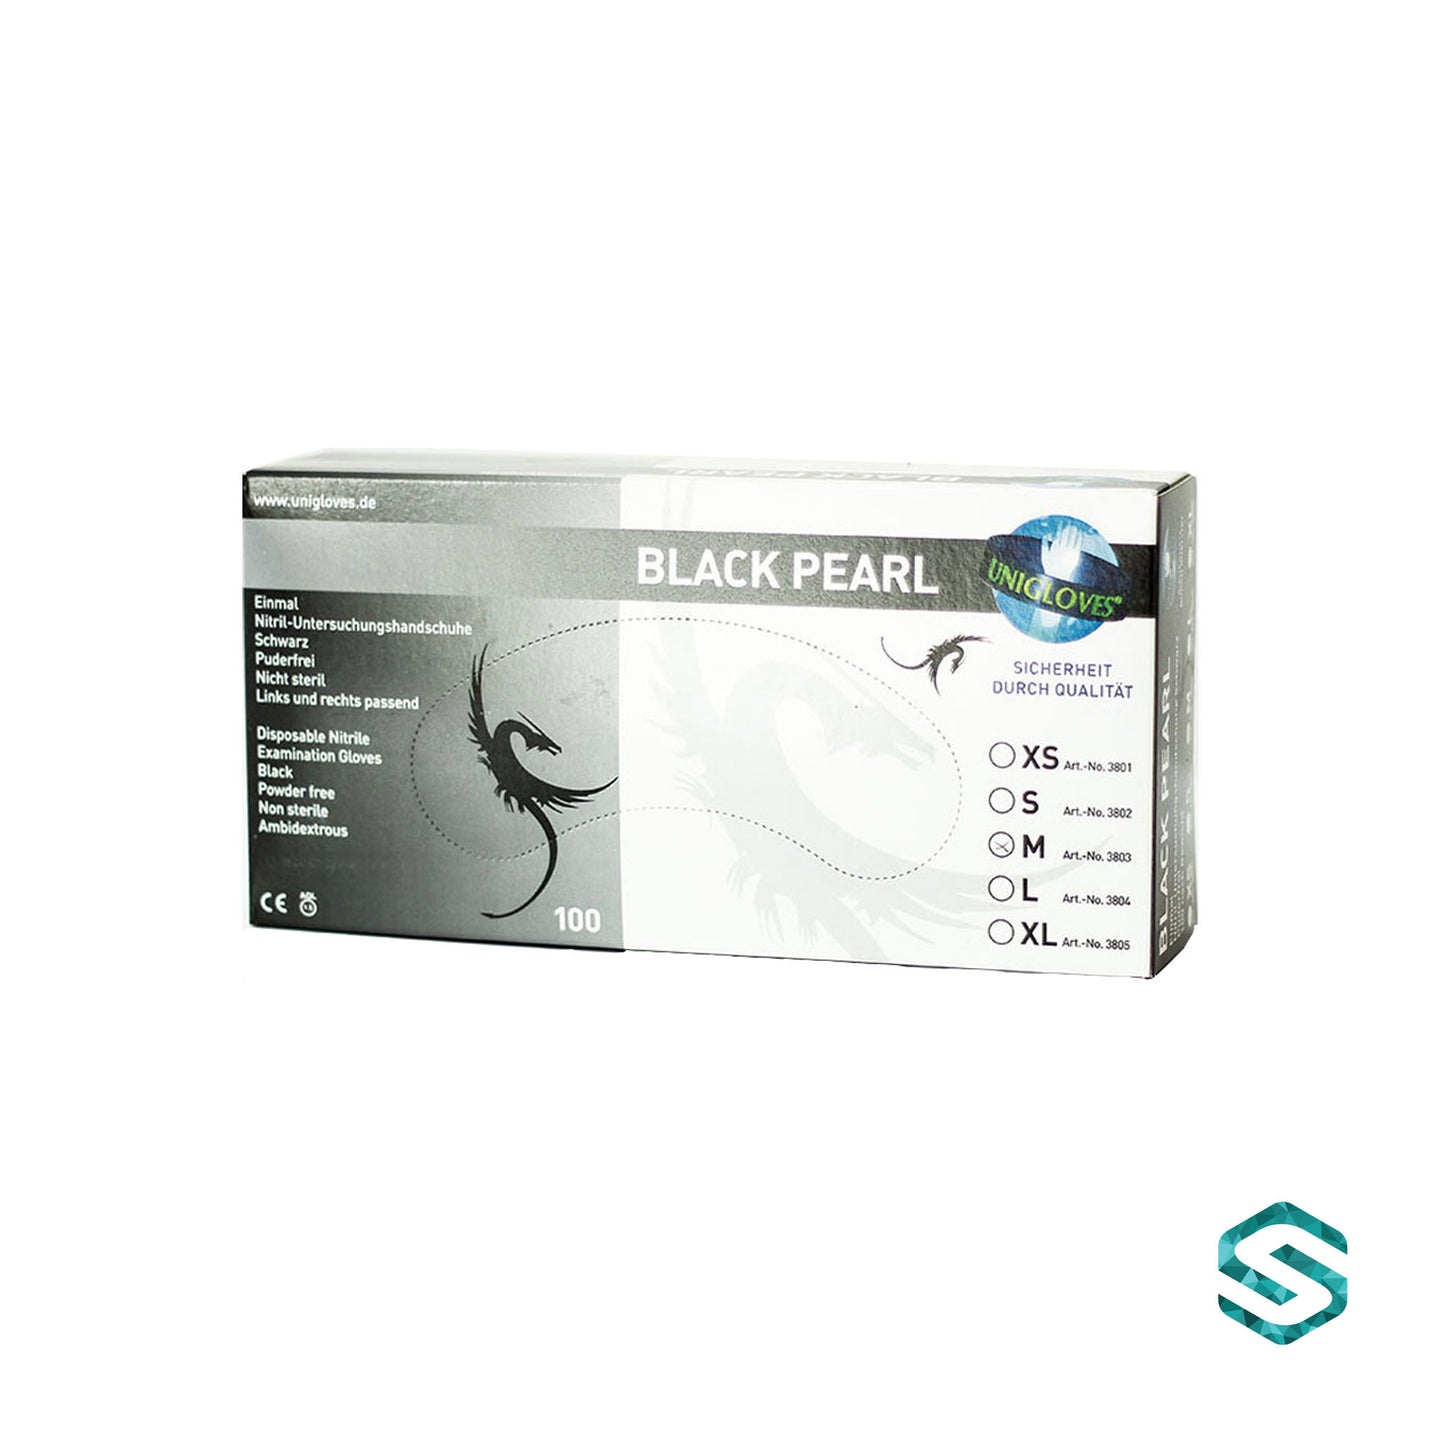 Unigloves - Black Pearl Nitril-Handschuhe schwarz, Größe XS-XL